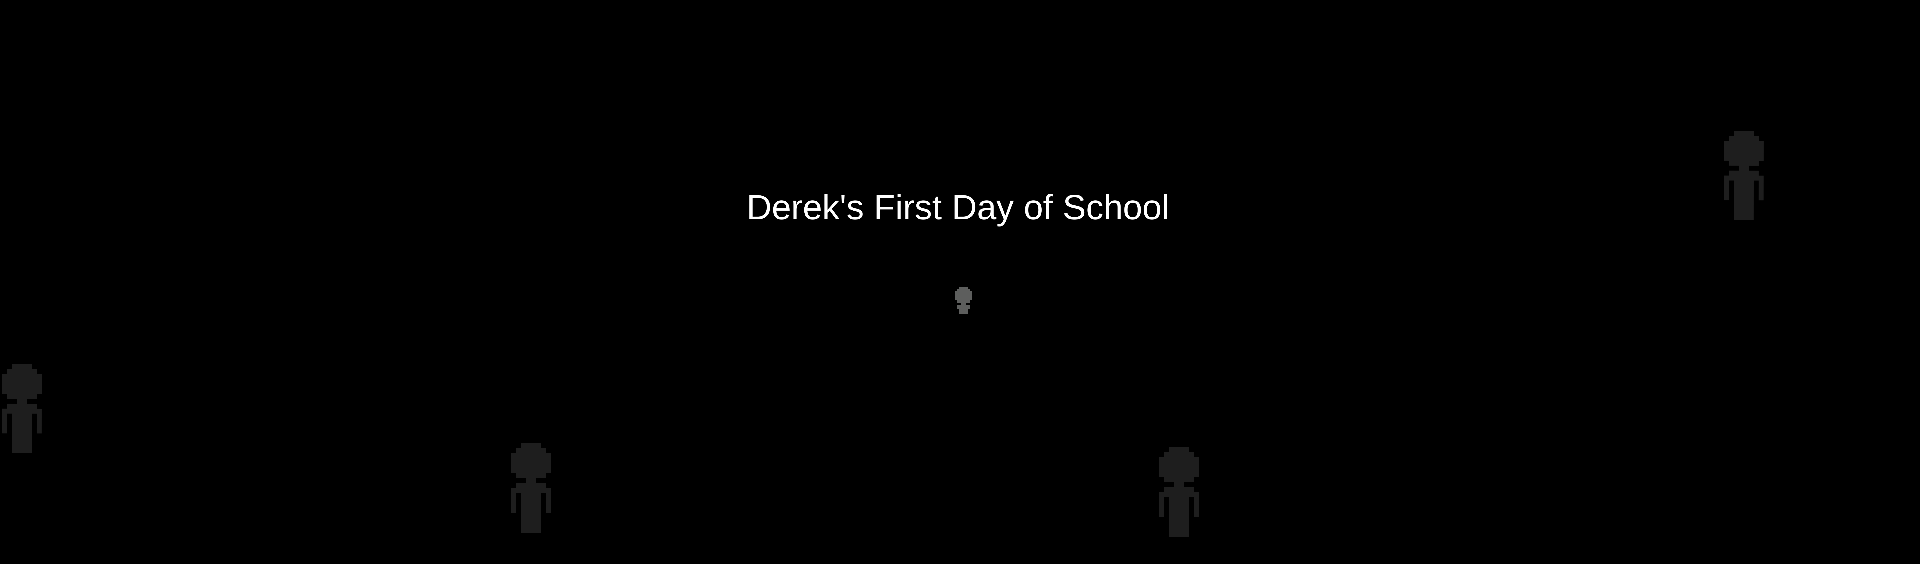 Dereck's first day of school